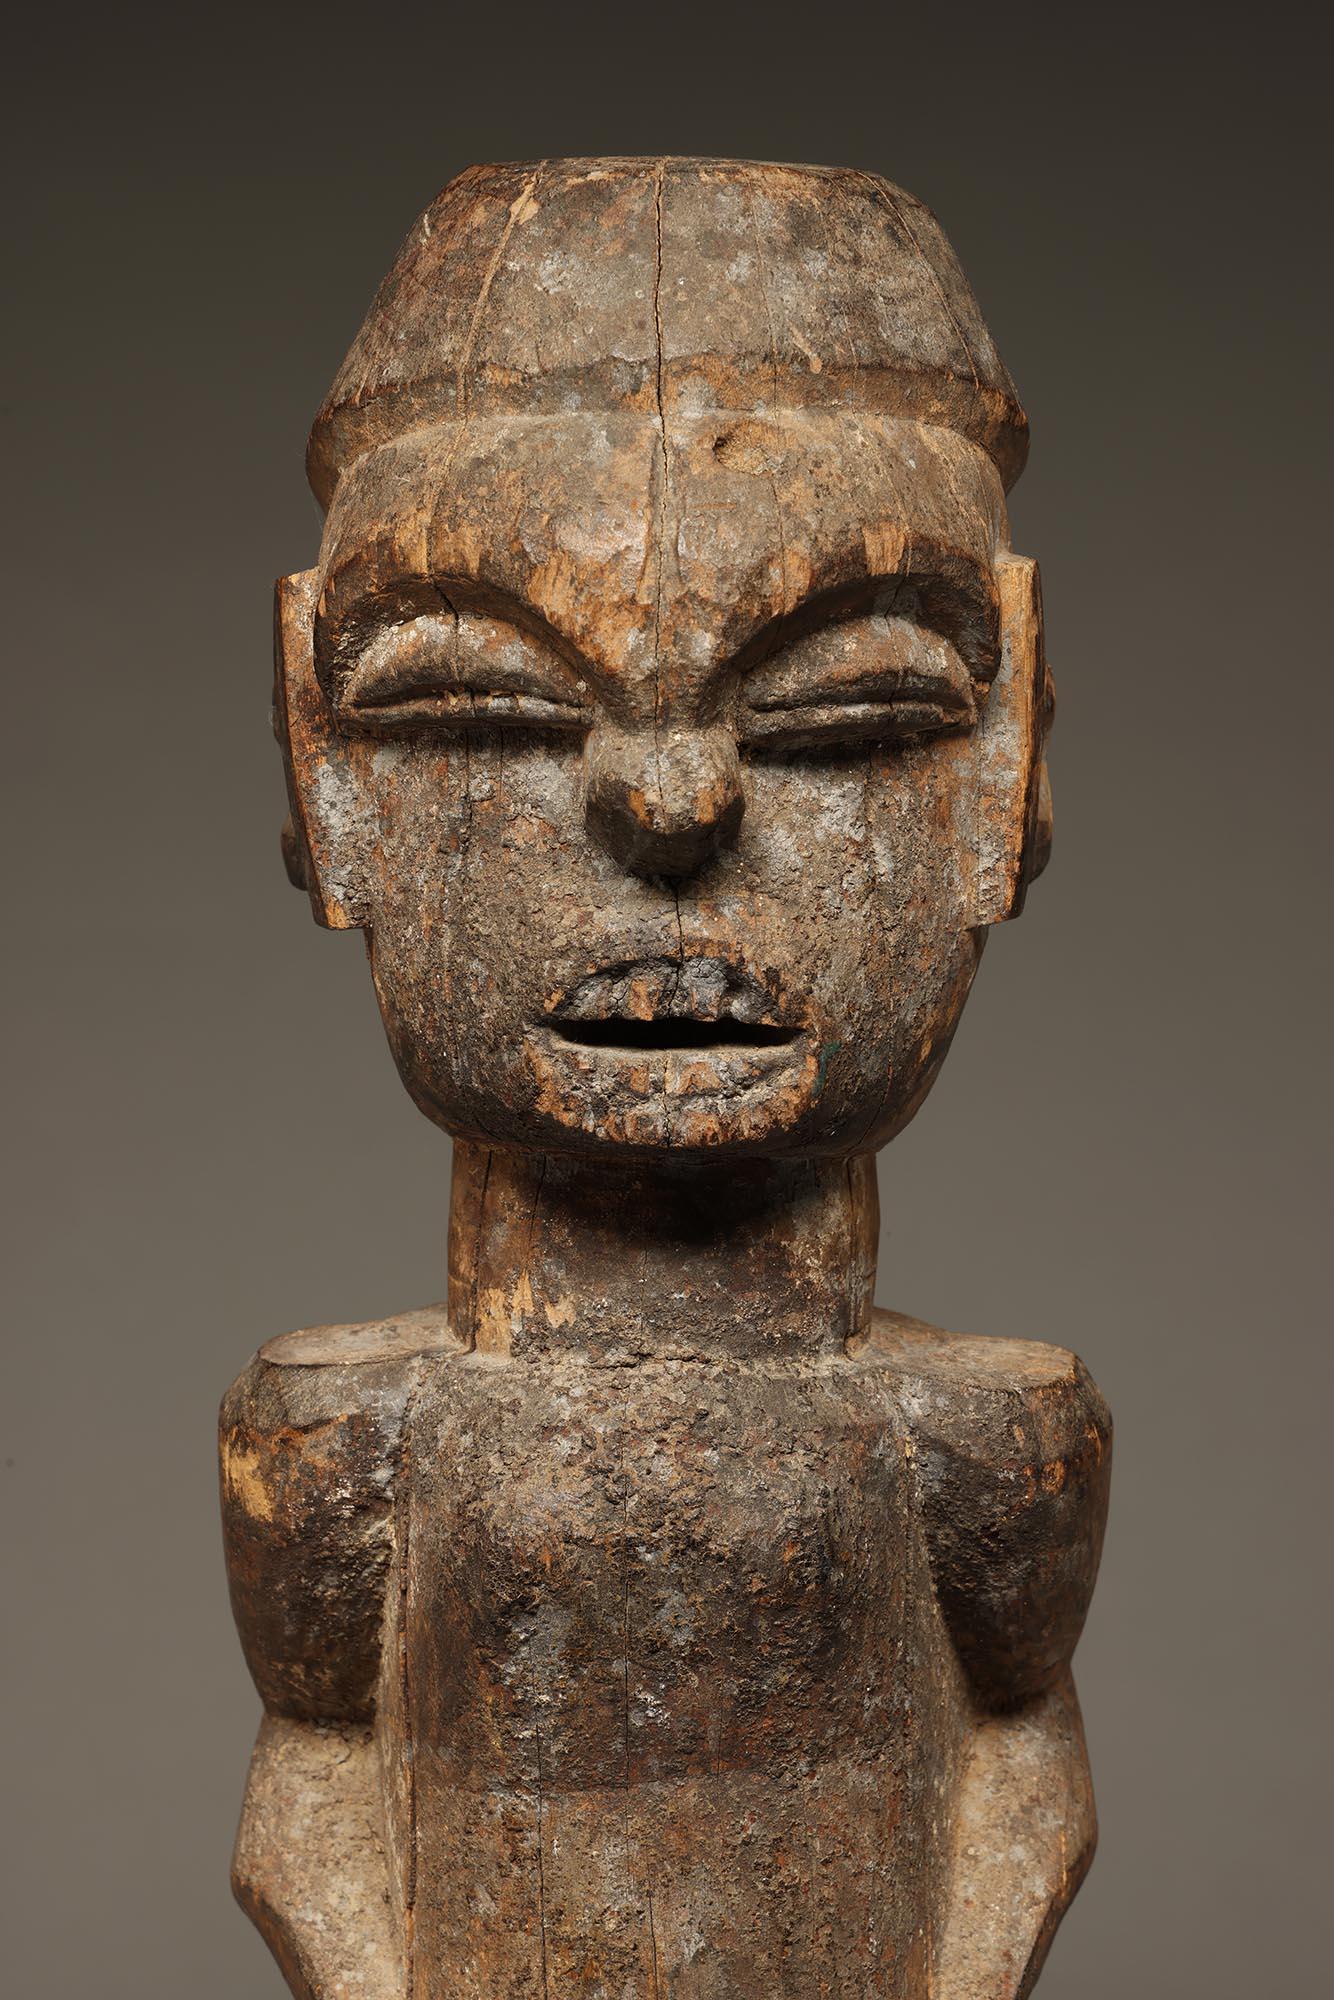 Frühe männliche Figur aus Ibibio-Holz, stehend, mit kräftigem Gesichtsausdruck, die Hände seitlich am Bauch, freiliegenden Zähnen und vertikalen, erhabenen Ritzungen an den Seiten des Gesichts.  Von einem Schrein mit den Überresten von verkrusteten